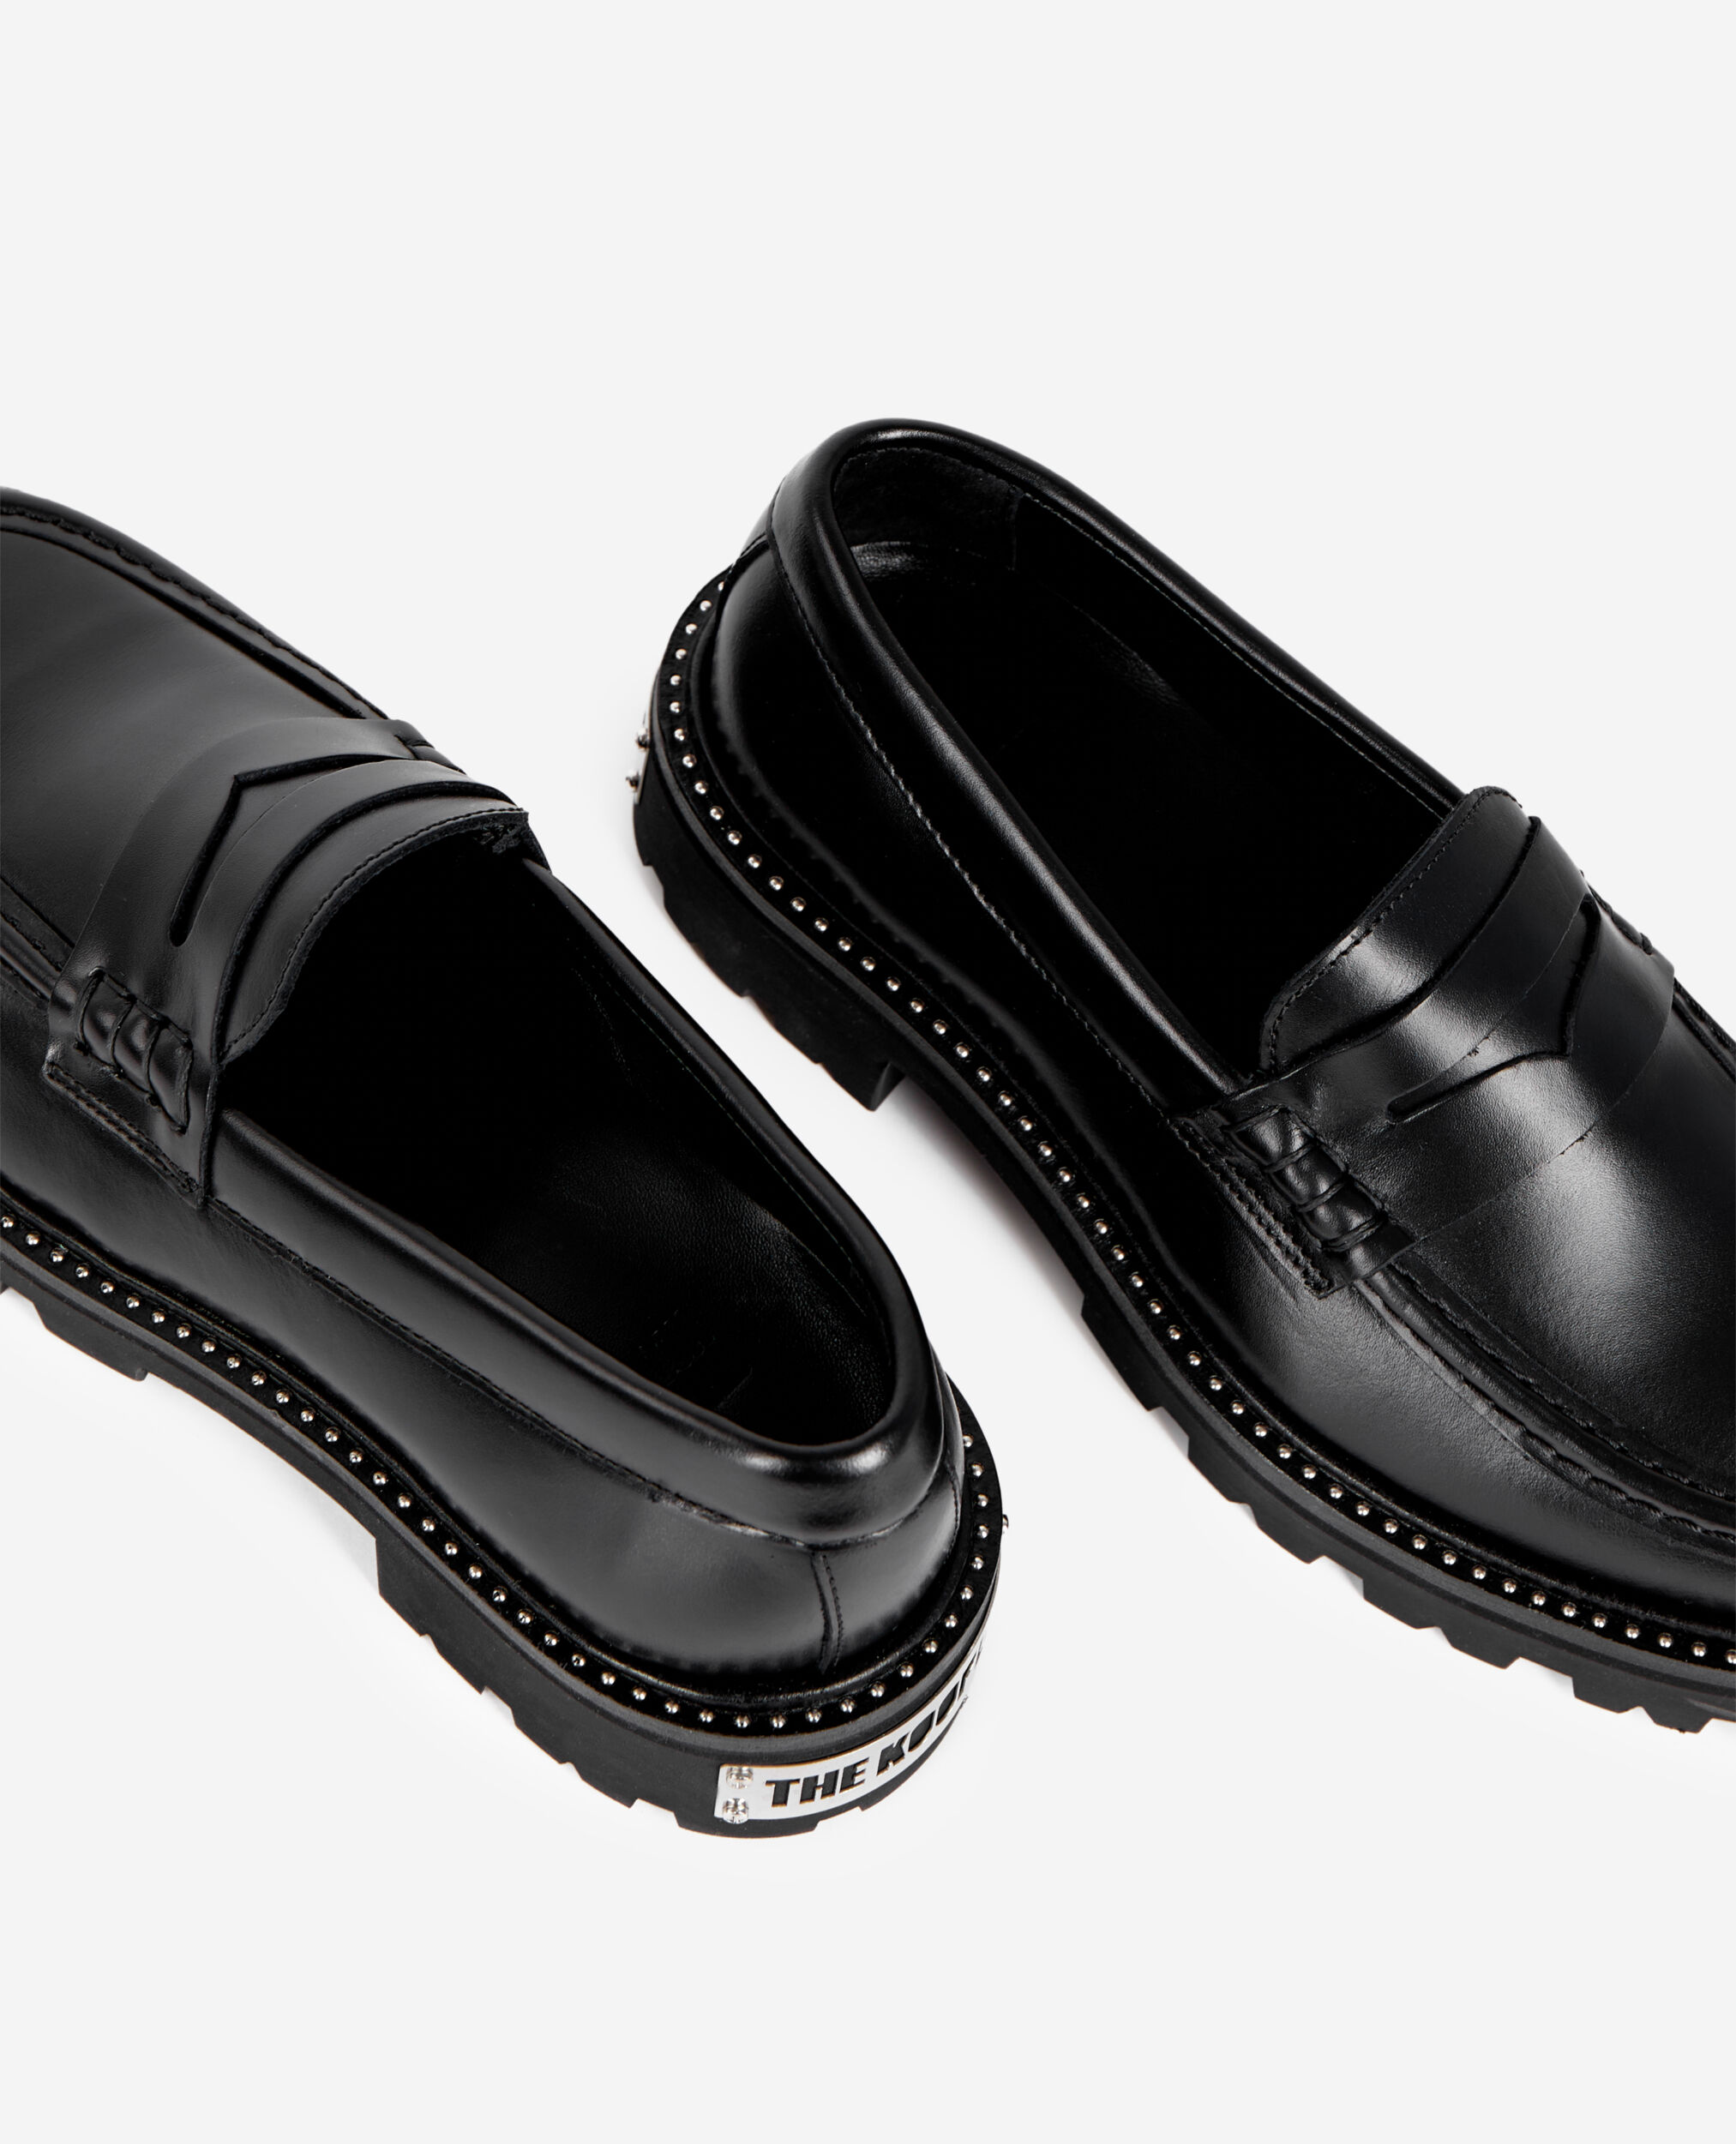 Black leather loafers, BLACK, hi-res image number null